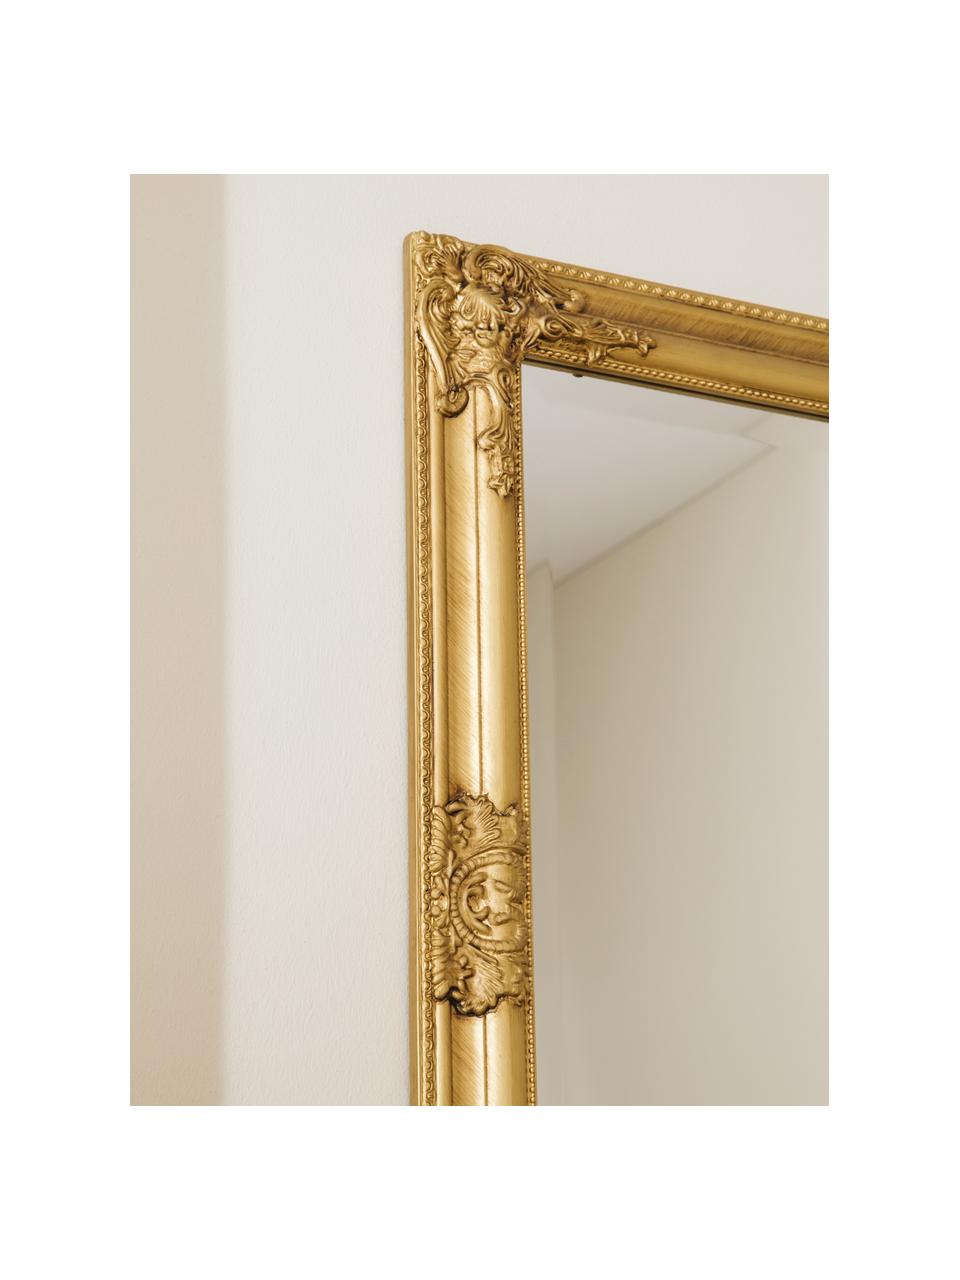 Specchio da parete con cornice dorata effetto vintage Miro, Cornice: legno di paulownia rivest, Superficie dello specchio: lastra di vetro, Dorato, Larg. 62 x Alt. 82 cm